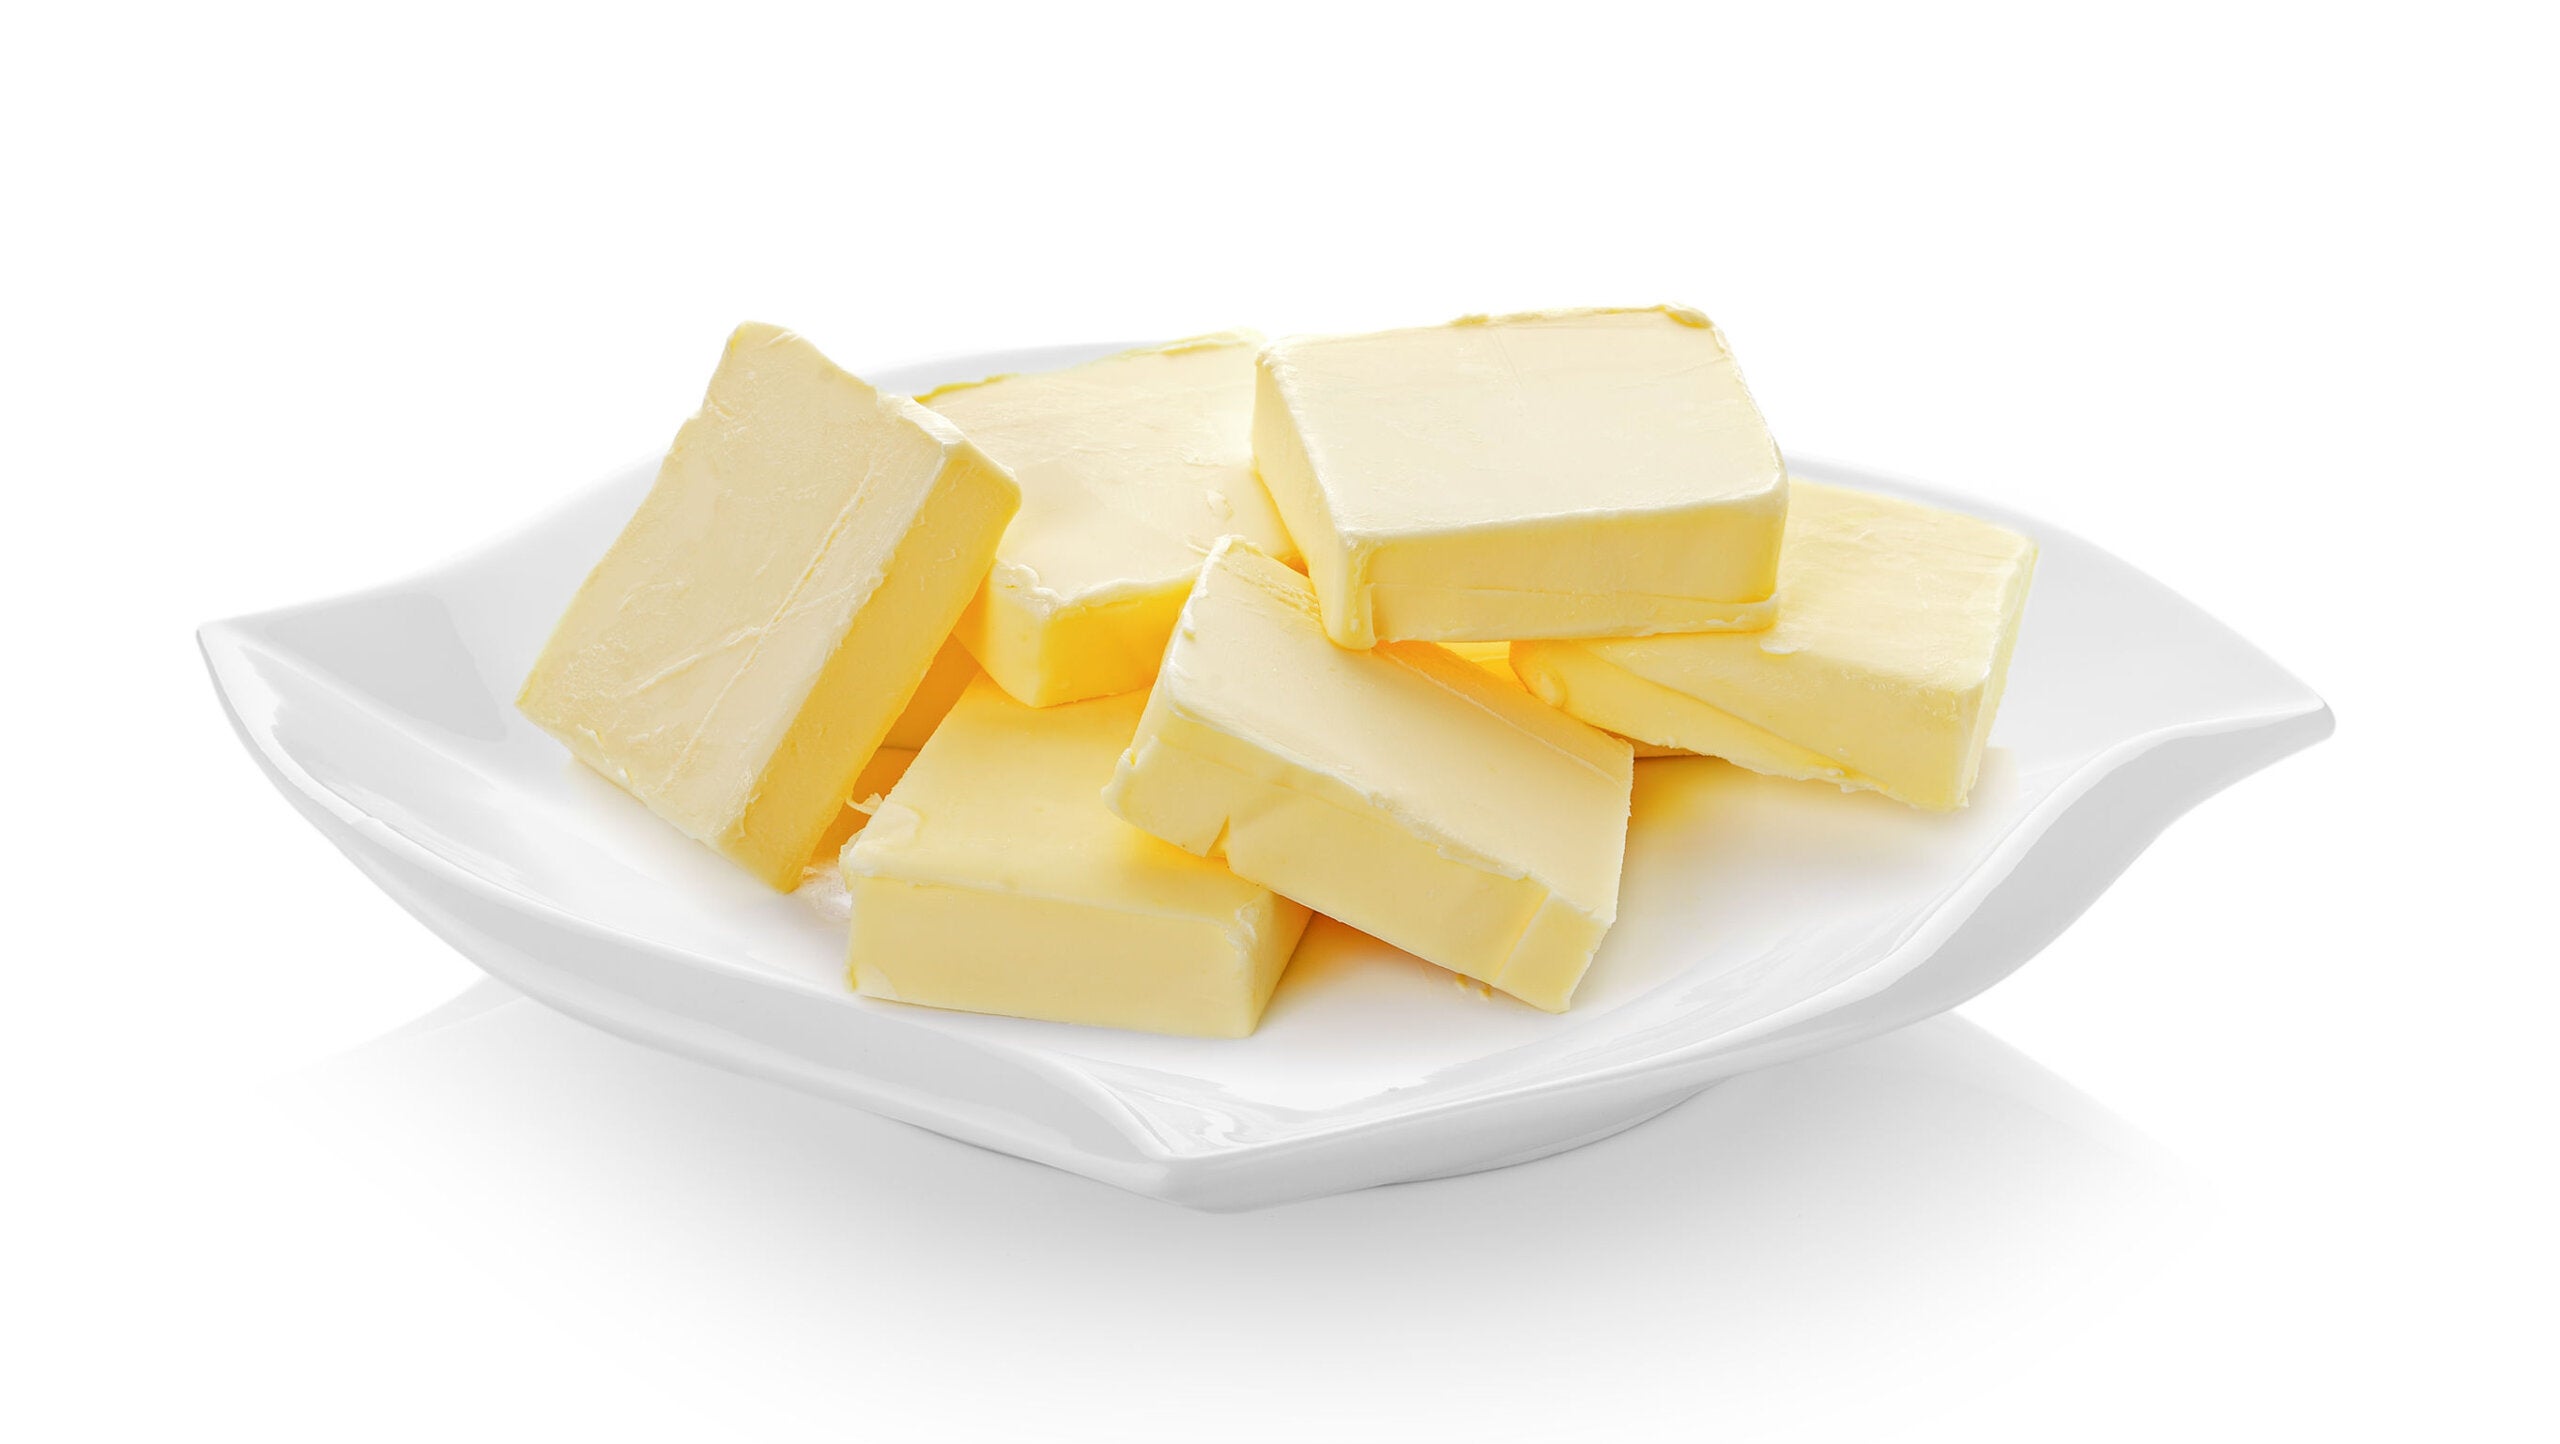 Comer mantequilla puede resultar beneficioso para la salud, si sabes cómo elegir.